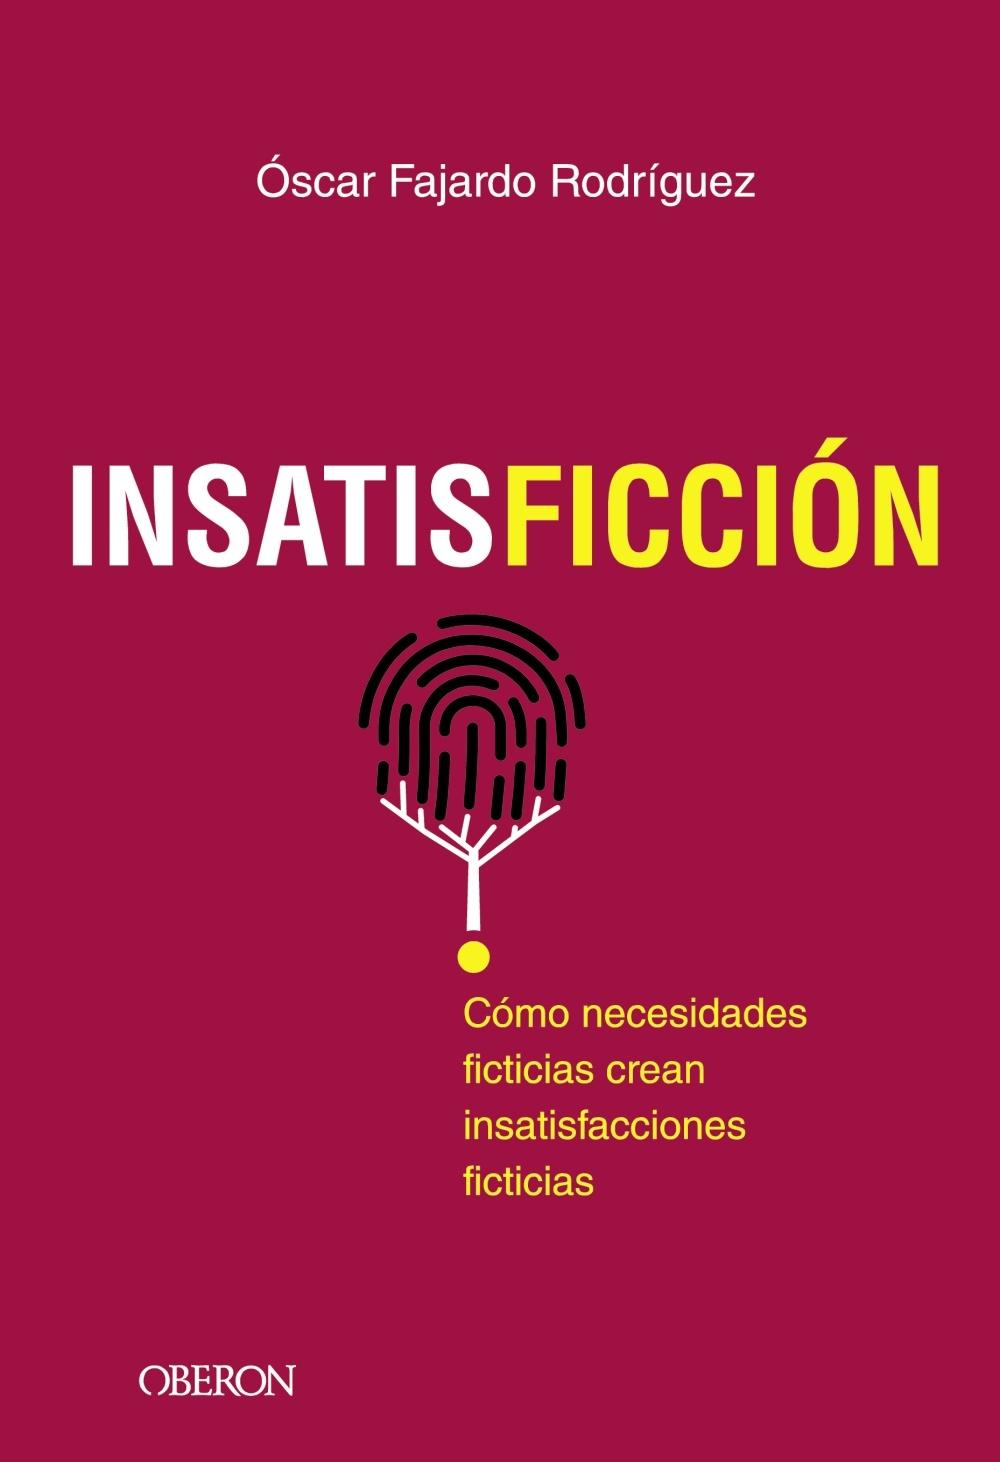 INSATISFICCION "Como necesidades ficticias crean insatisfacciones ficticias". 